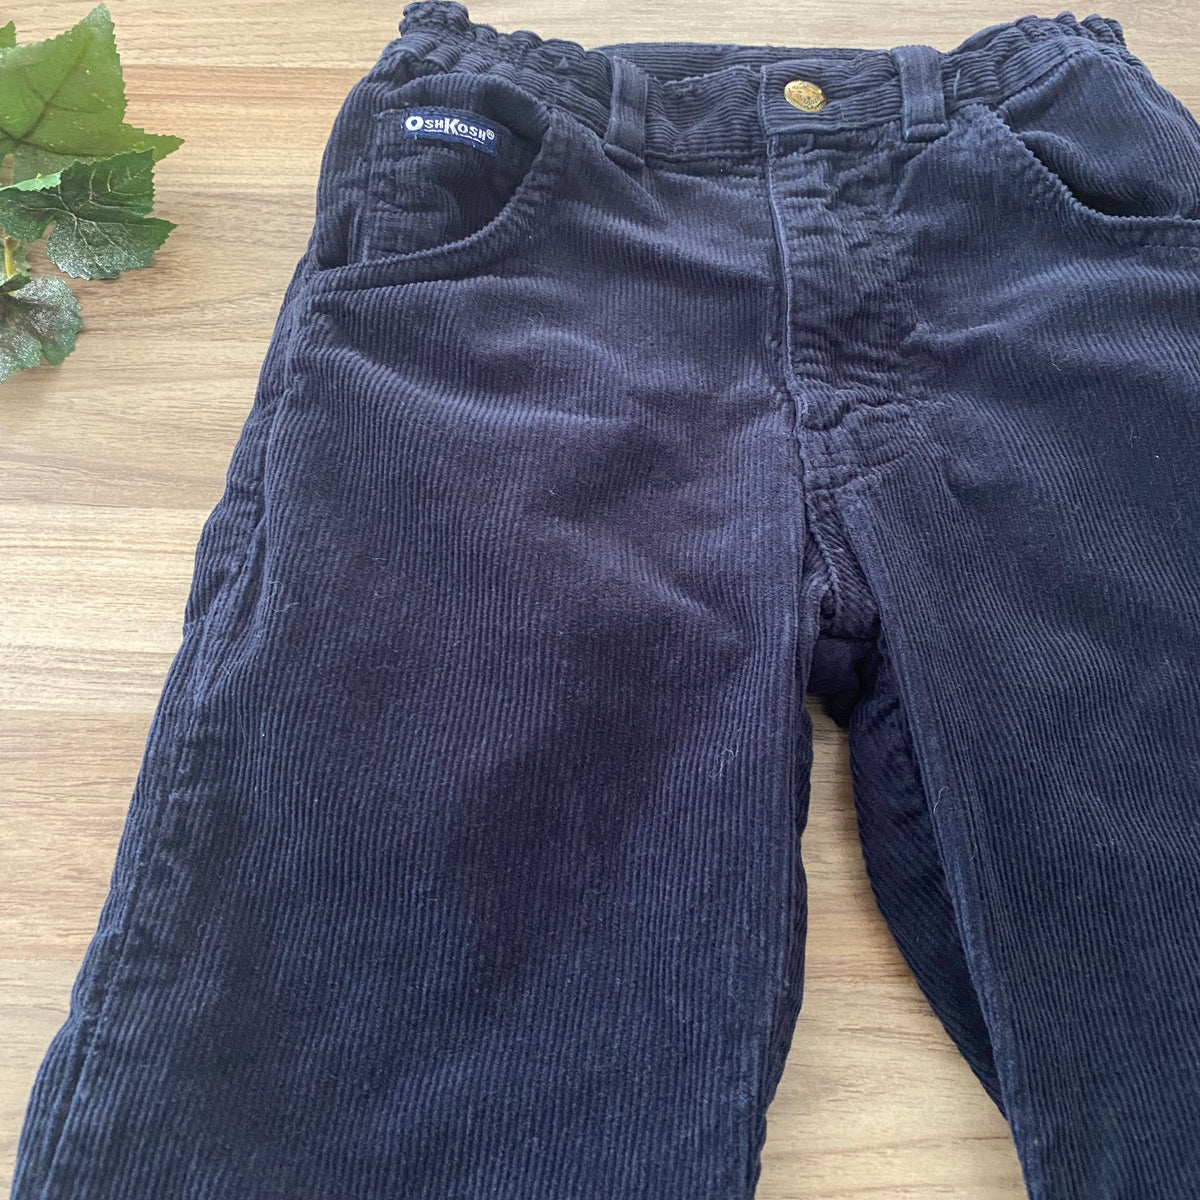 Corduroy Pants (Boys Size 6)